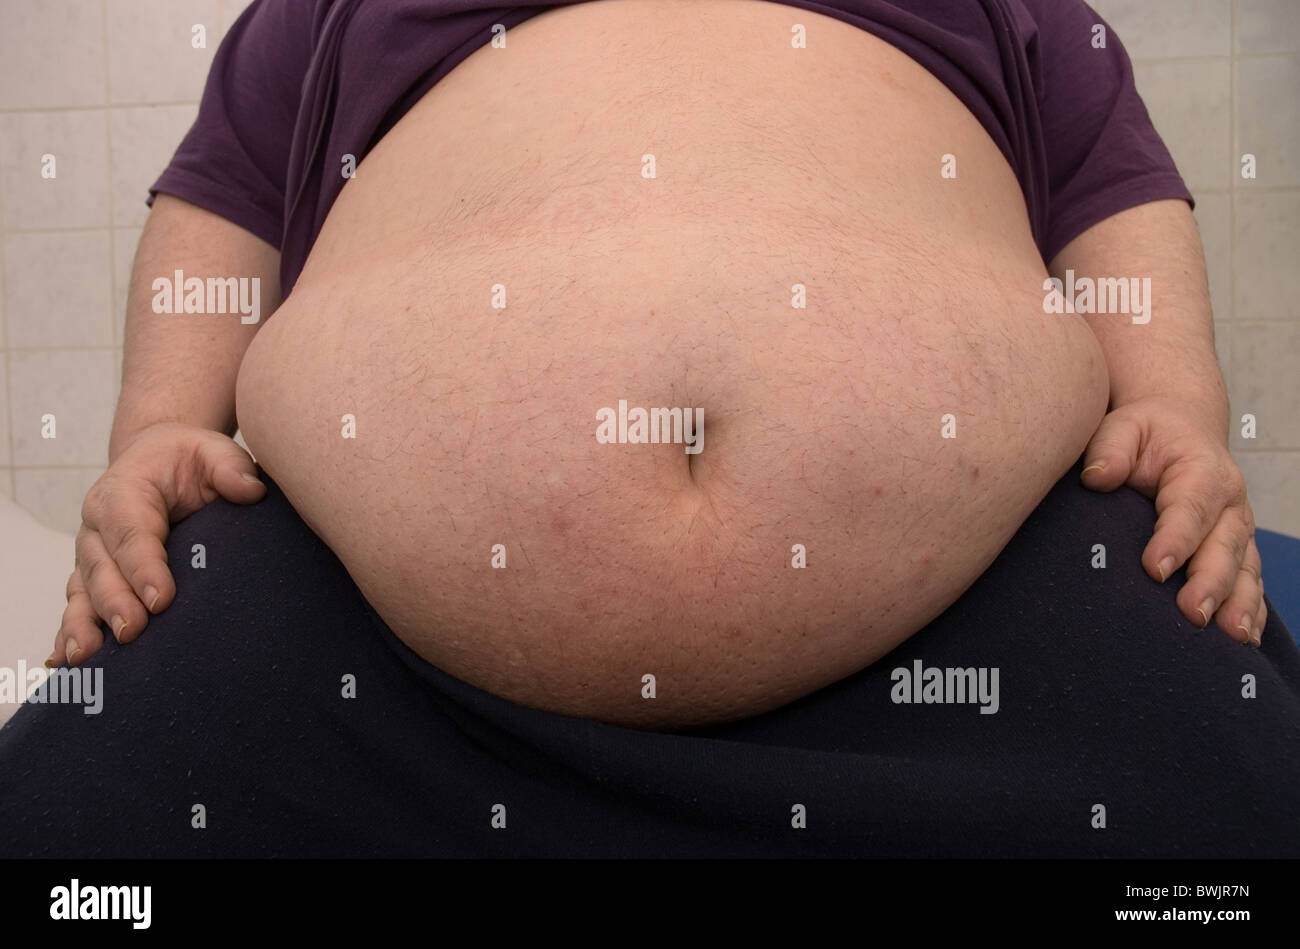 Ventre d'un patient obèse Photo Stock - Alamy